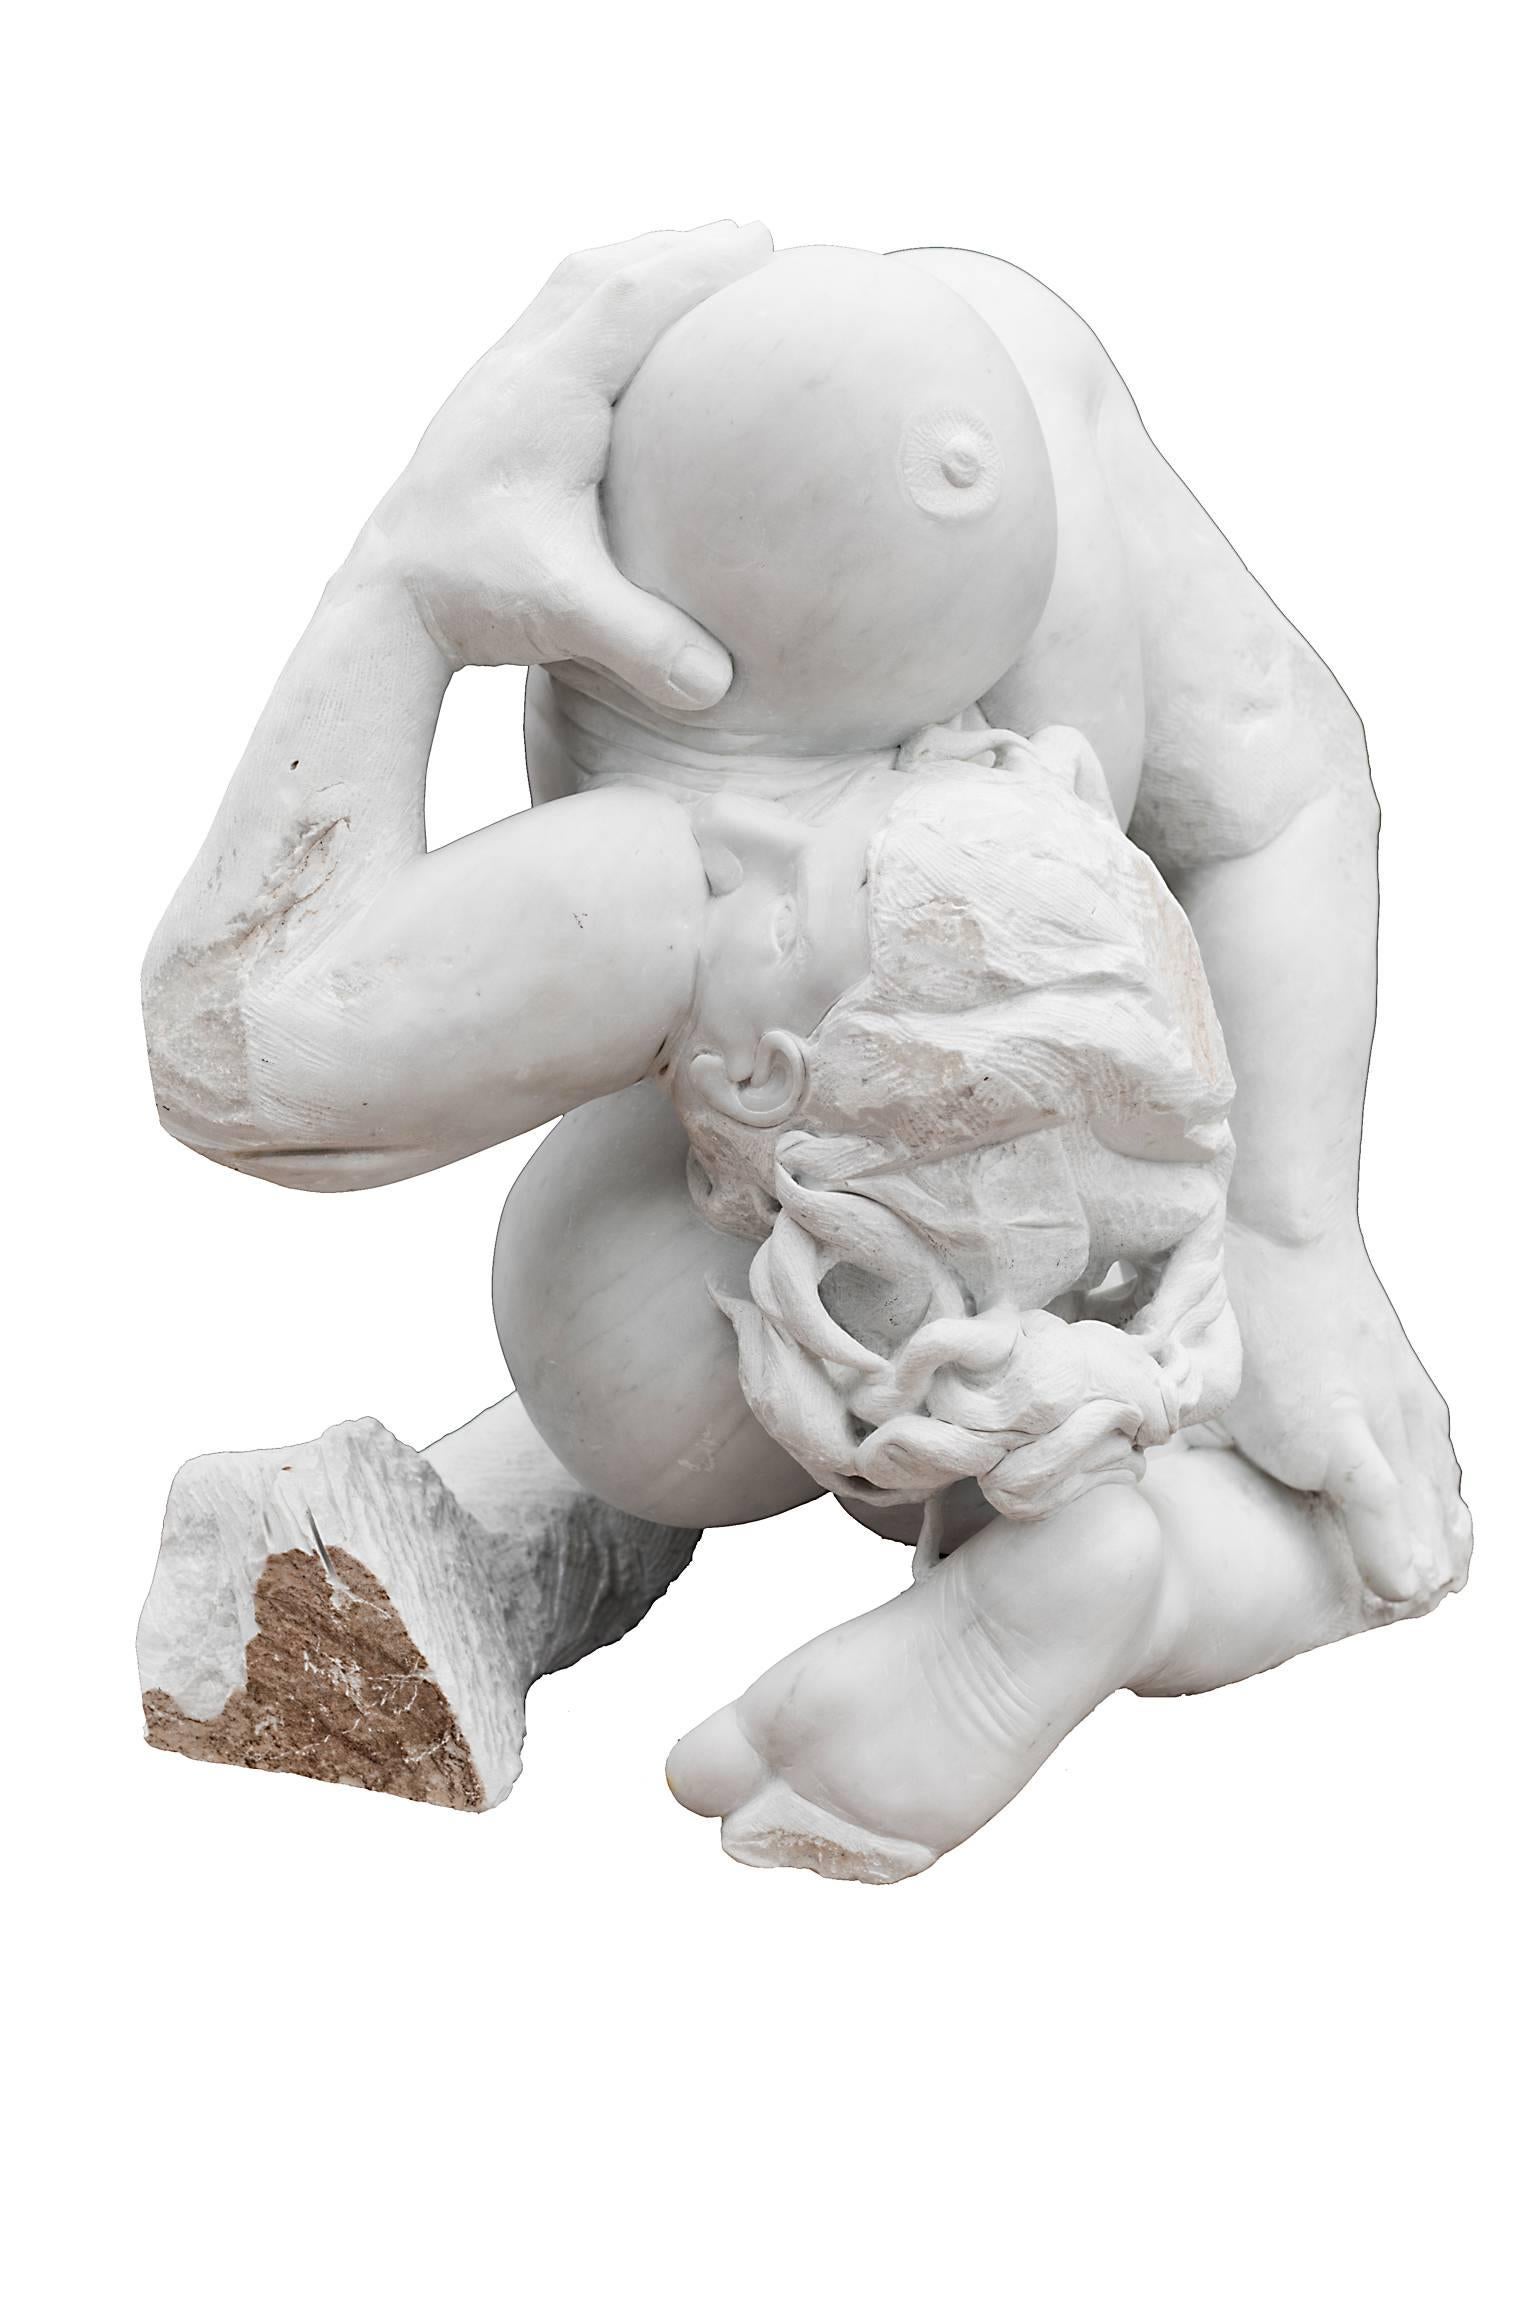 MADRE TERRA (Terre nourricière) de Lorenzo Vignoli (2012)

Sculpture saisissante en marbre de Carrare sculptée à la main par le sculpteur italien contemporain Lorenzo Vignoli, incorporant des références classiques et des influences méditerranéennes